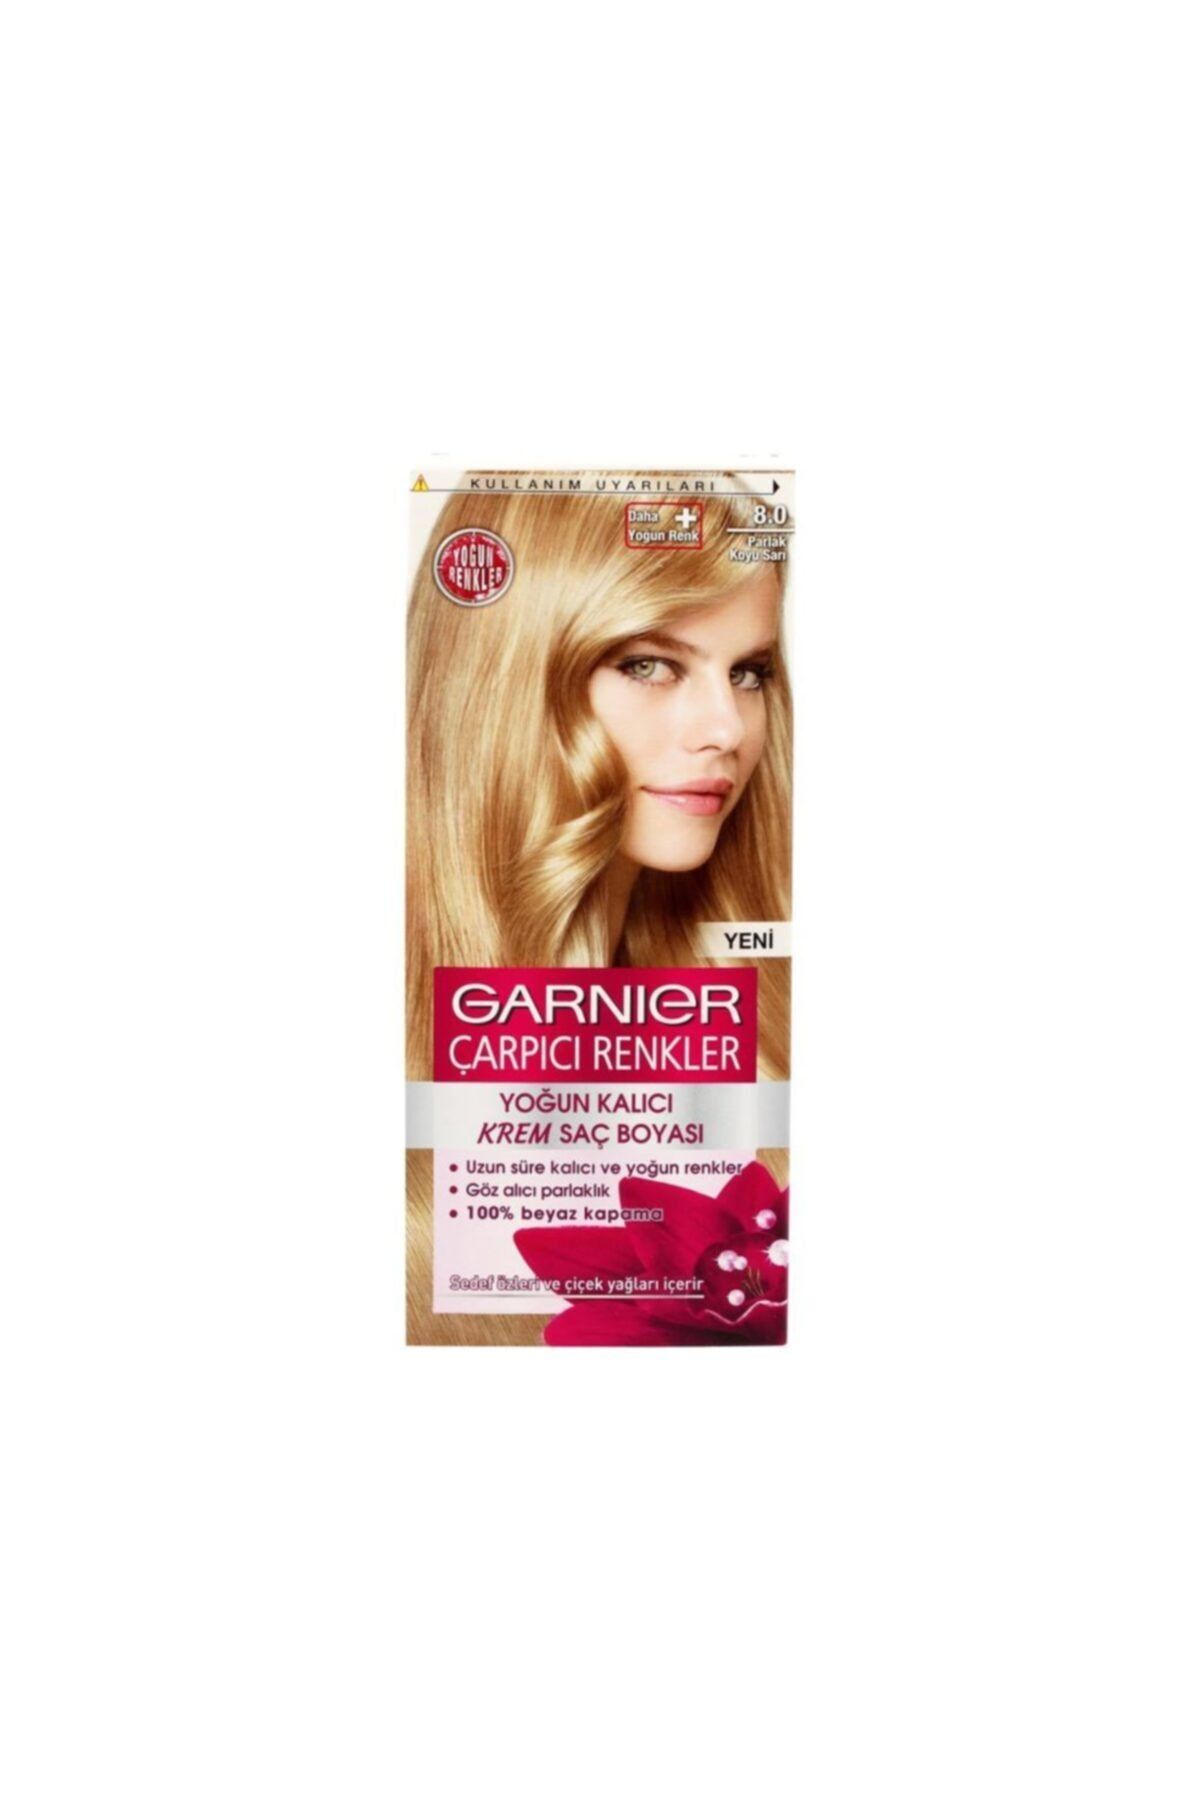 Garnier Çarpıcı Renkler Krem Saç Boyası 7.0 Bal Kumral